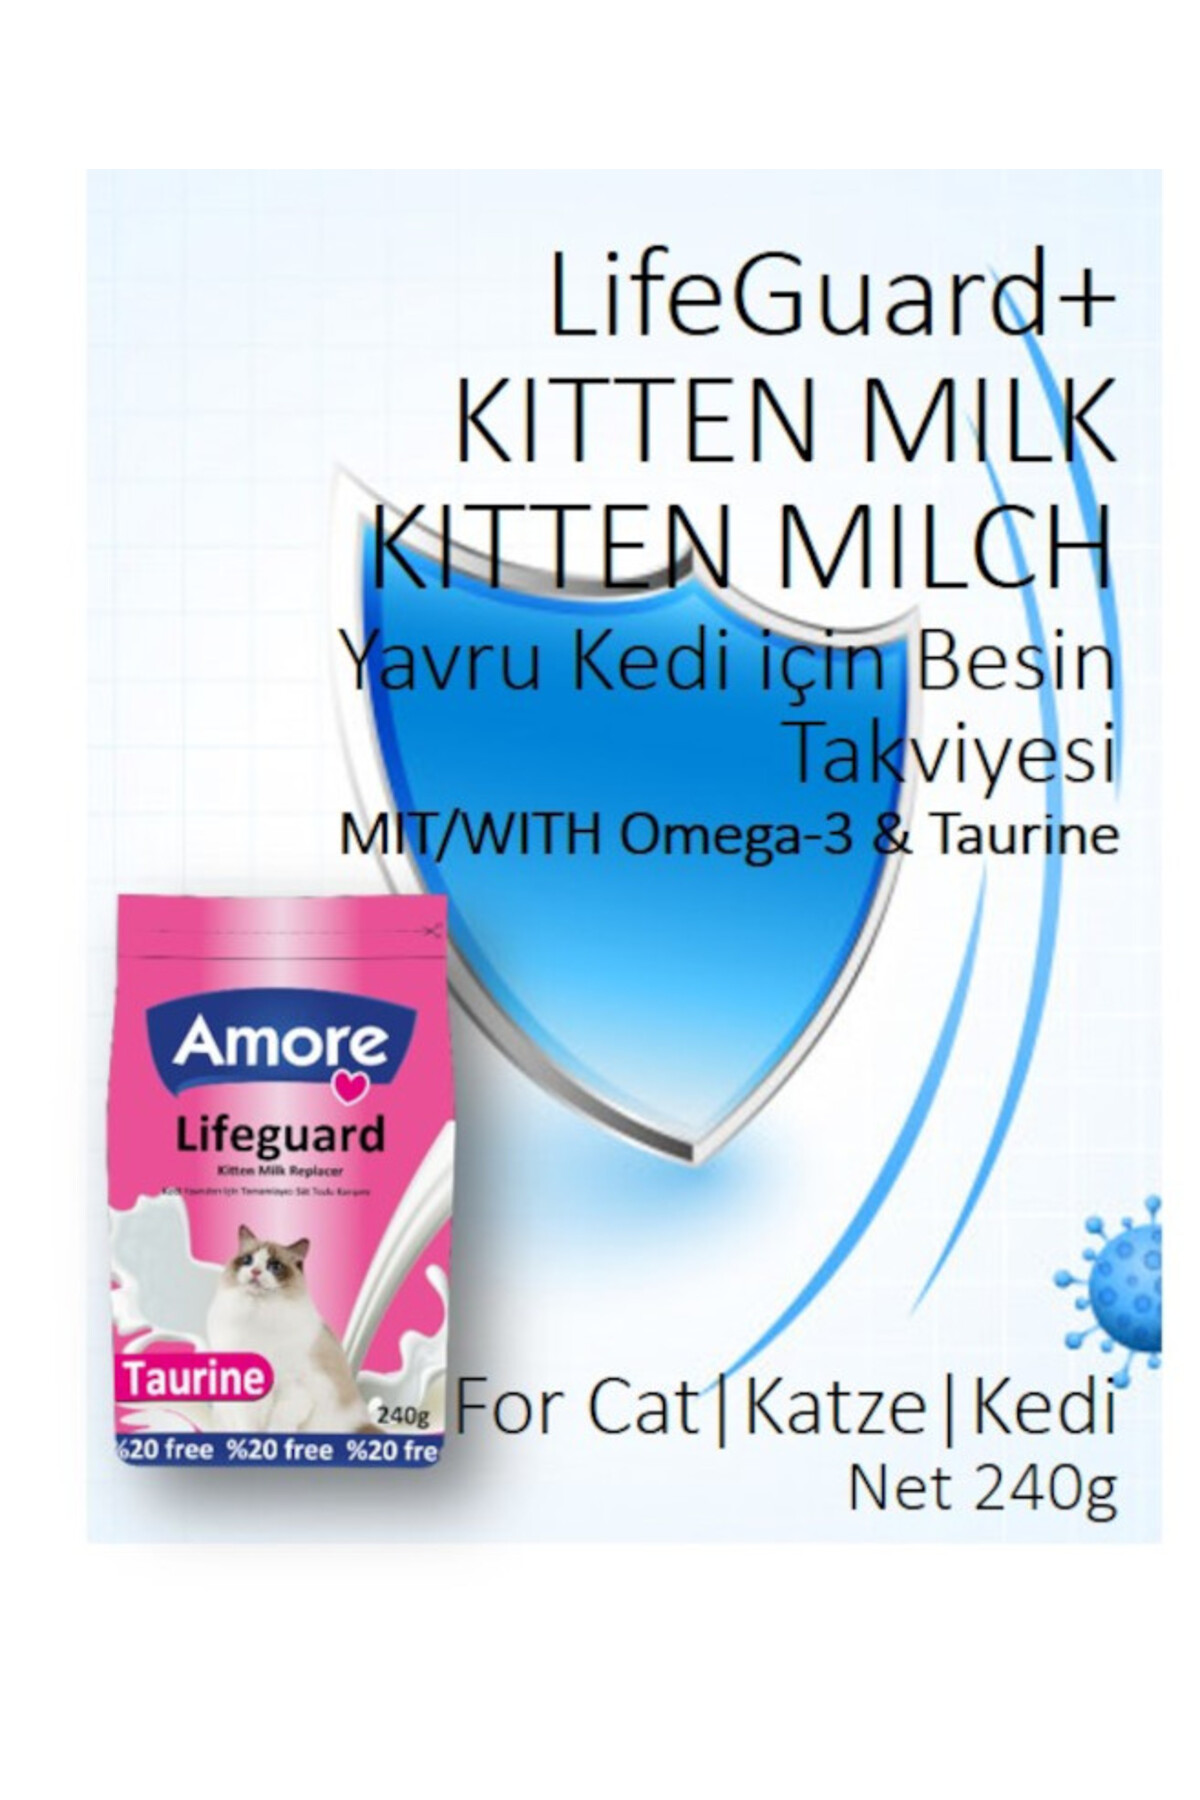 Amore Lifeguard Kitten Milk 240gr, Bonisa Kitten 6-Punch, Biberon, Mama Kabı Seti